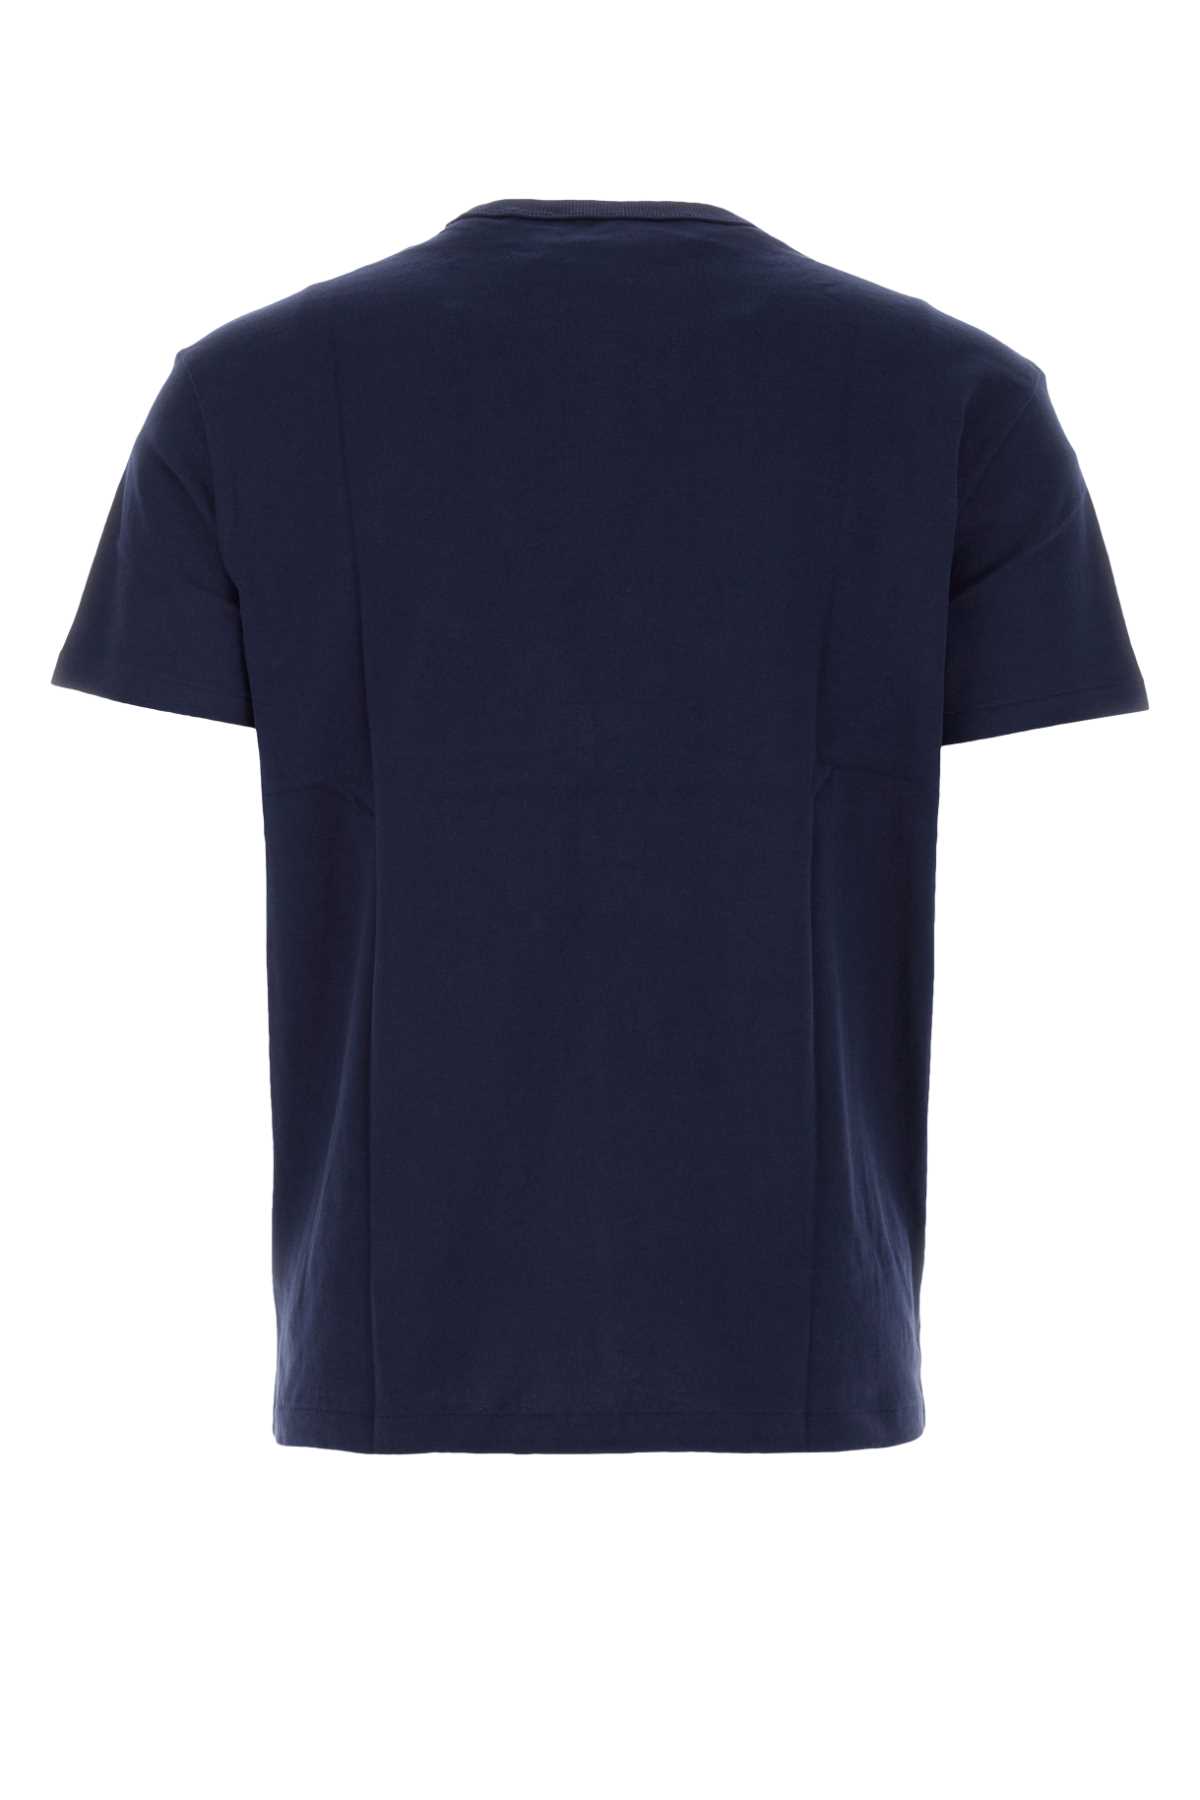 Polo Ralph Lauren Midnight Blue Cotton T-shirt In Newportnavy